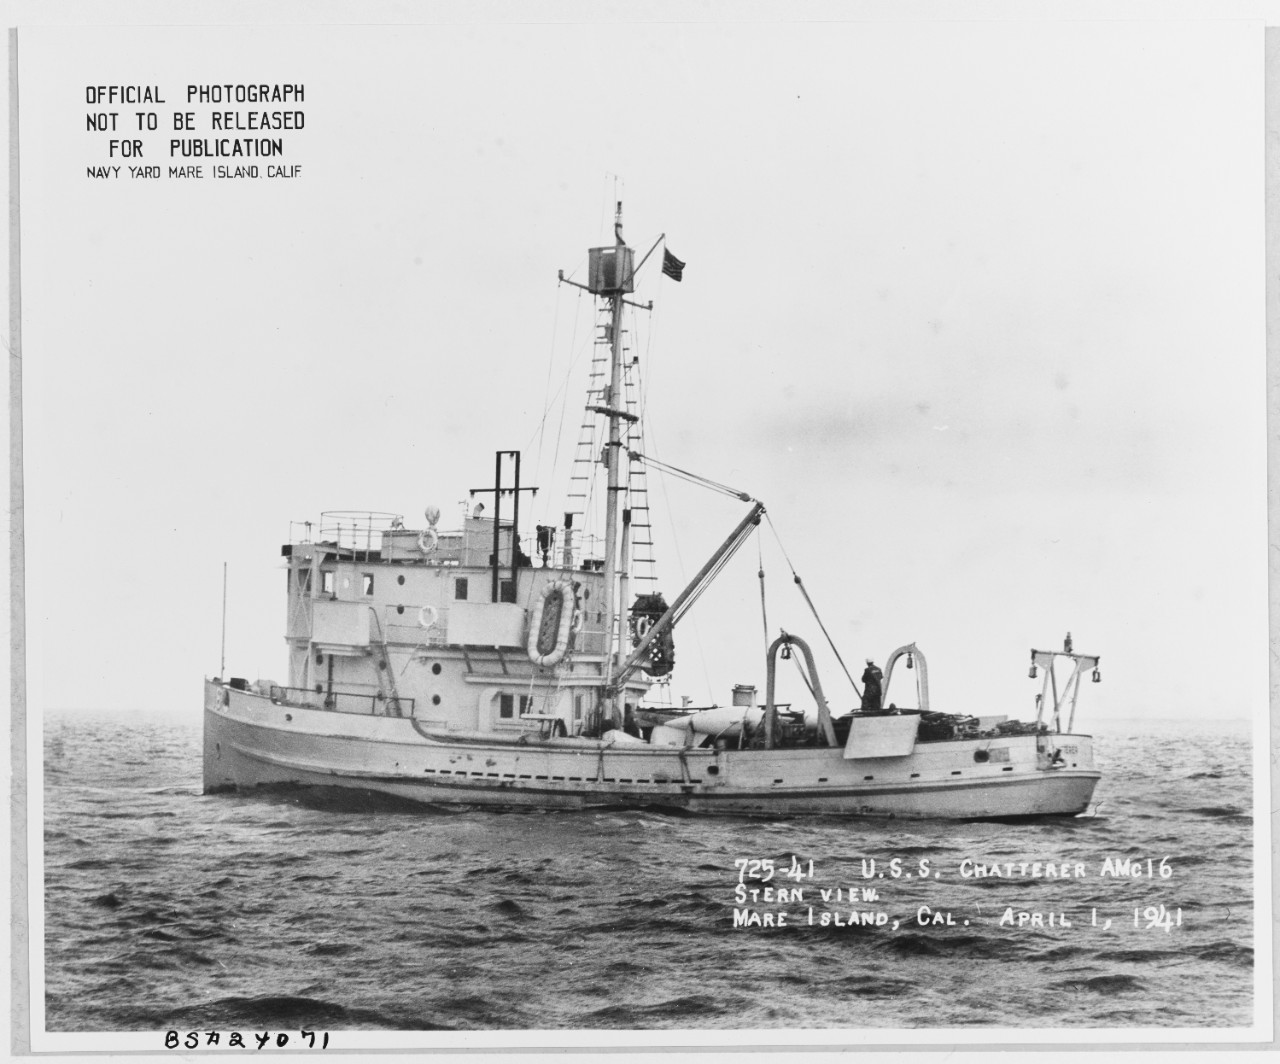 USS CHATTERER (AMc-16)